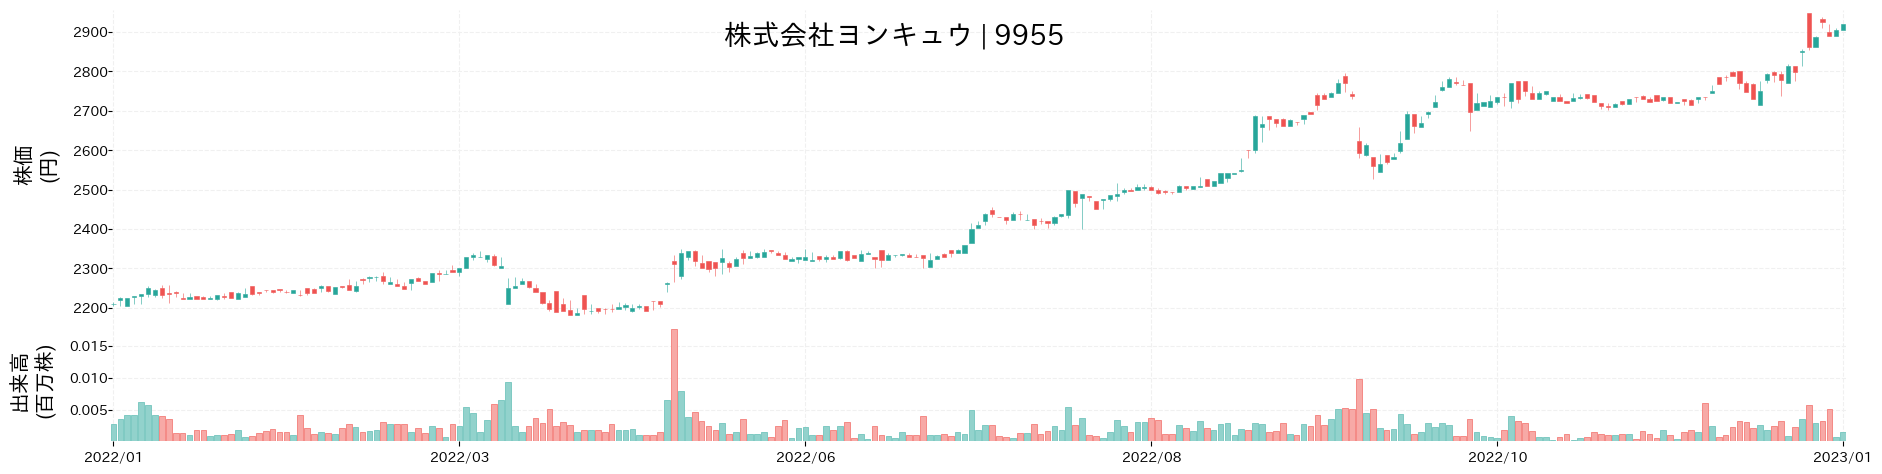 ヨンキュウの株価推移(2022)